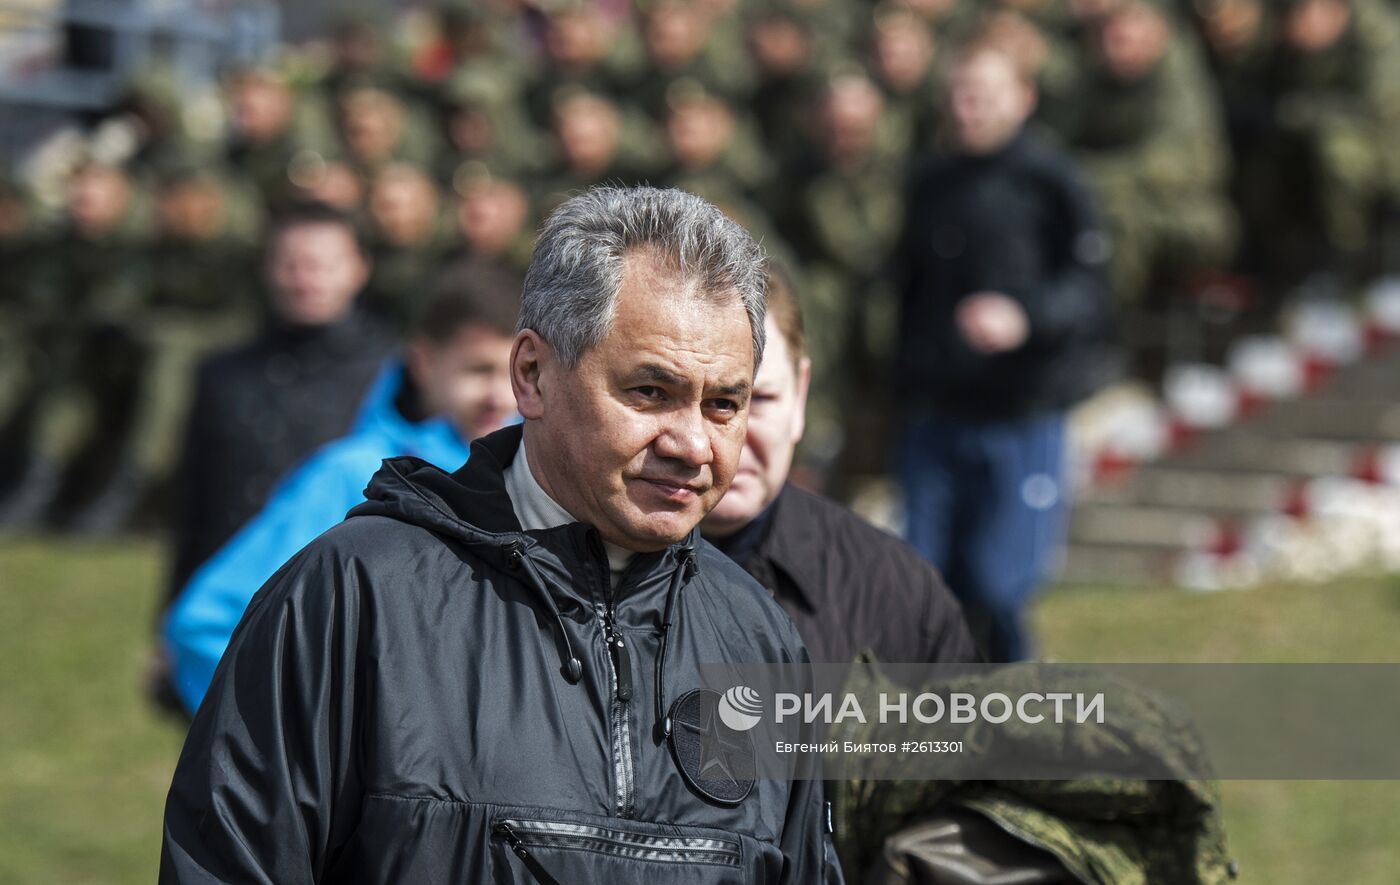 Министр обороны РФ С.Шойгу открыл сезон военно-спортивной игры "Гонка героев" в Алабино